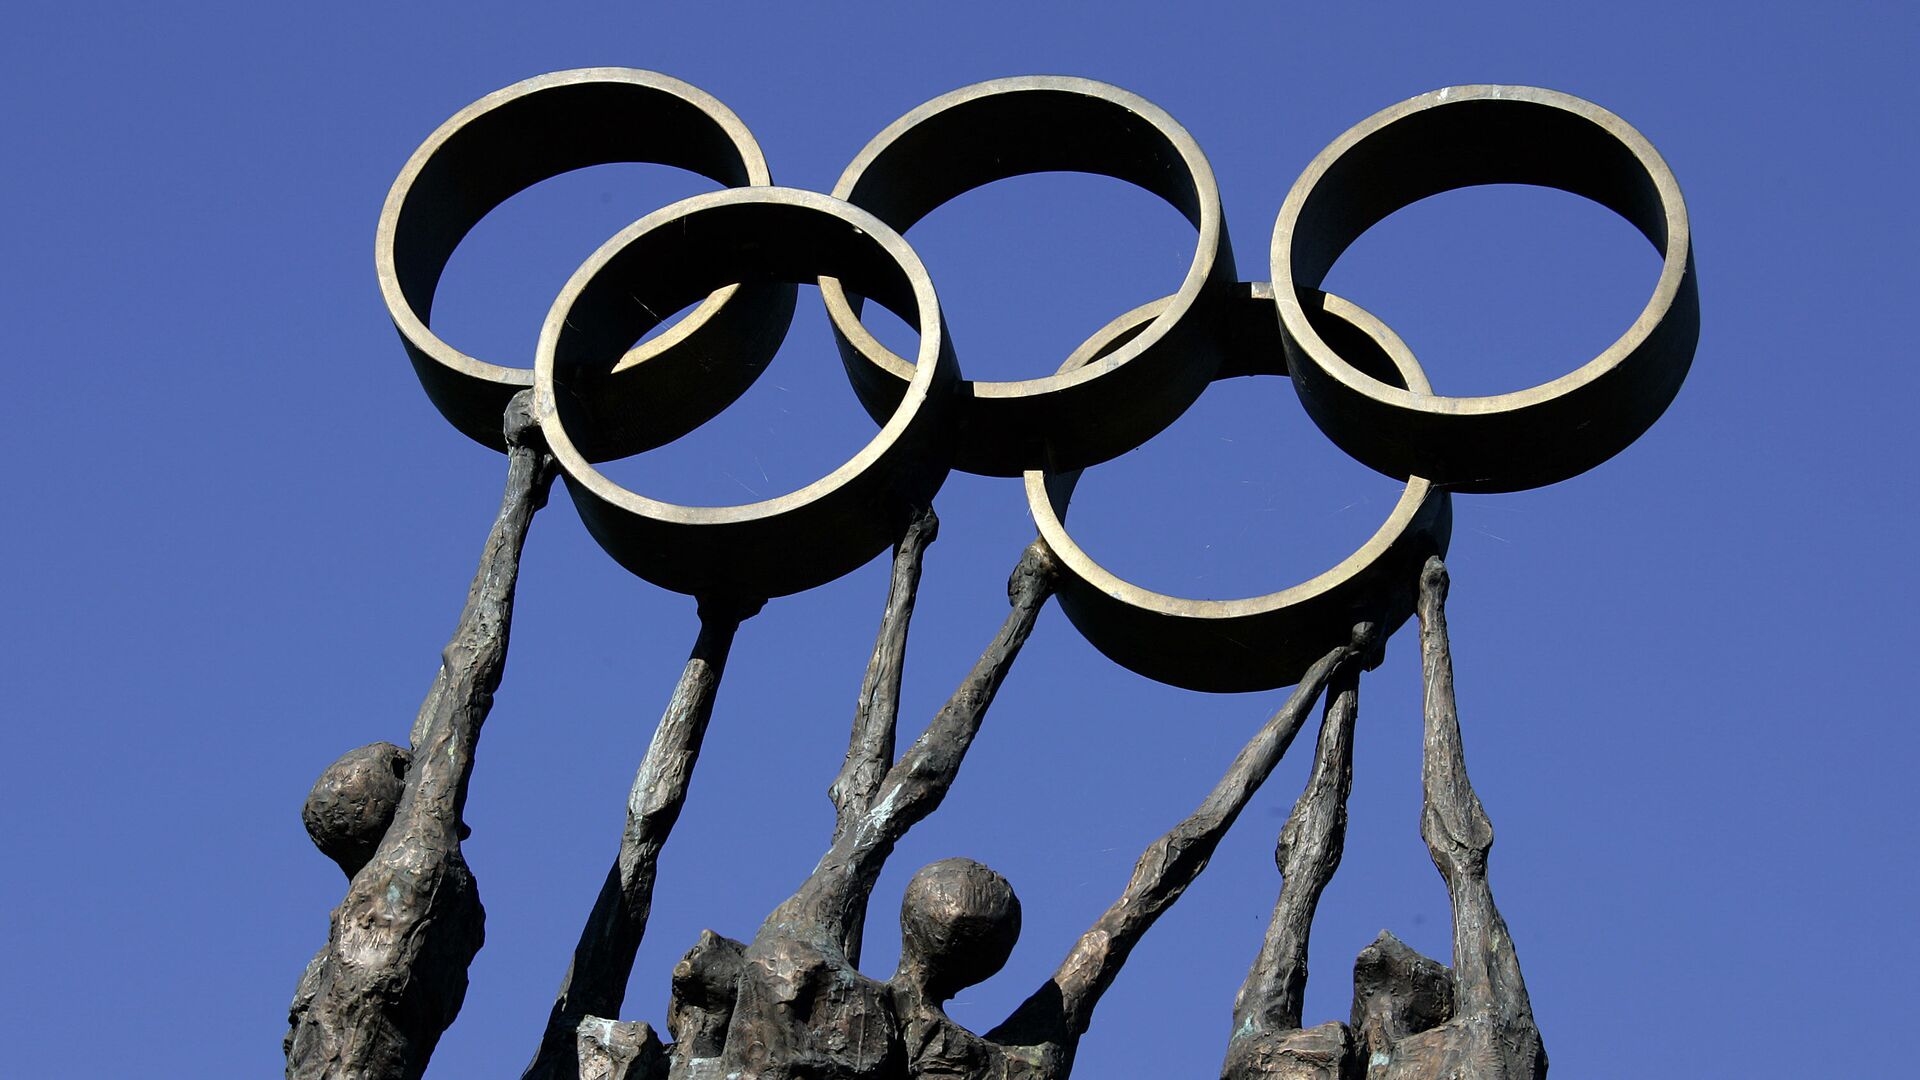 ロシア選手と同じ大会に参加した選手は五輪代表追放＝ウクライナ政府 - Sputnik 日本, 1920, 31.03.2023